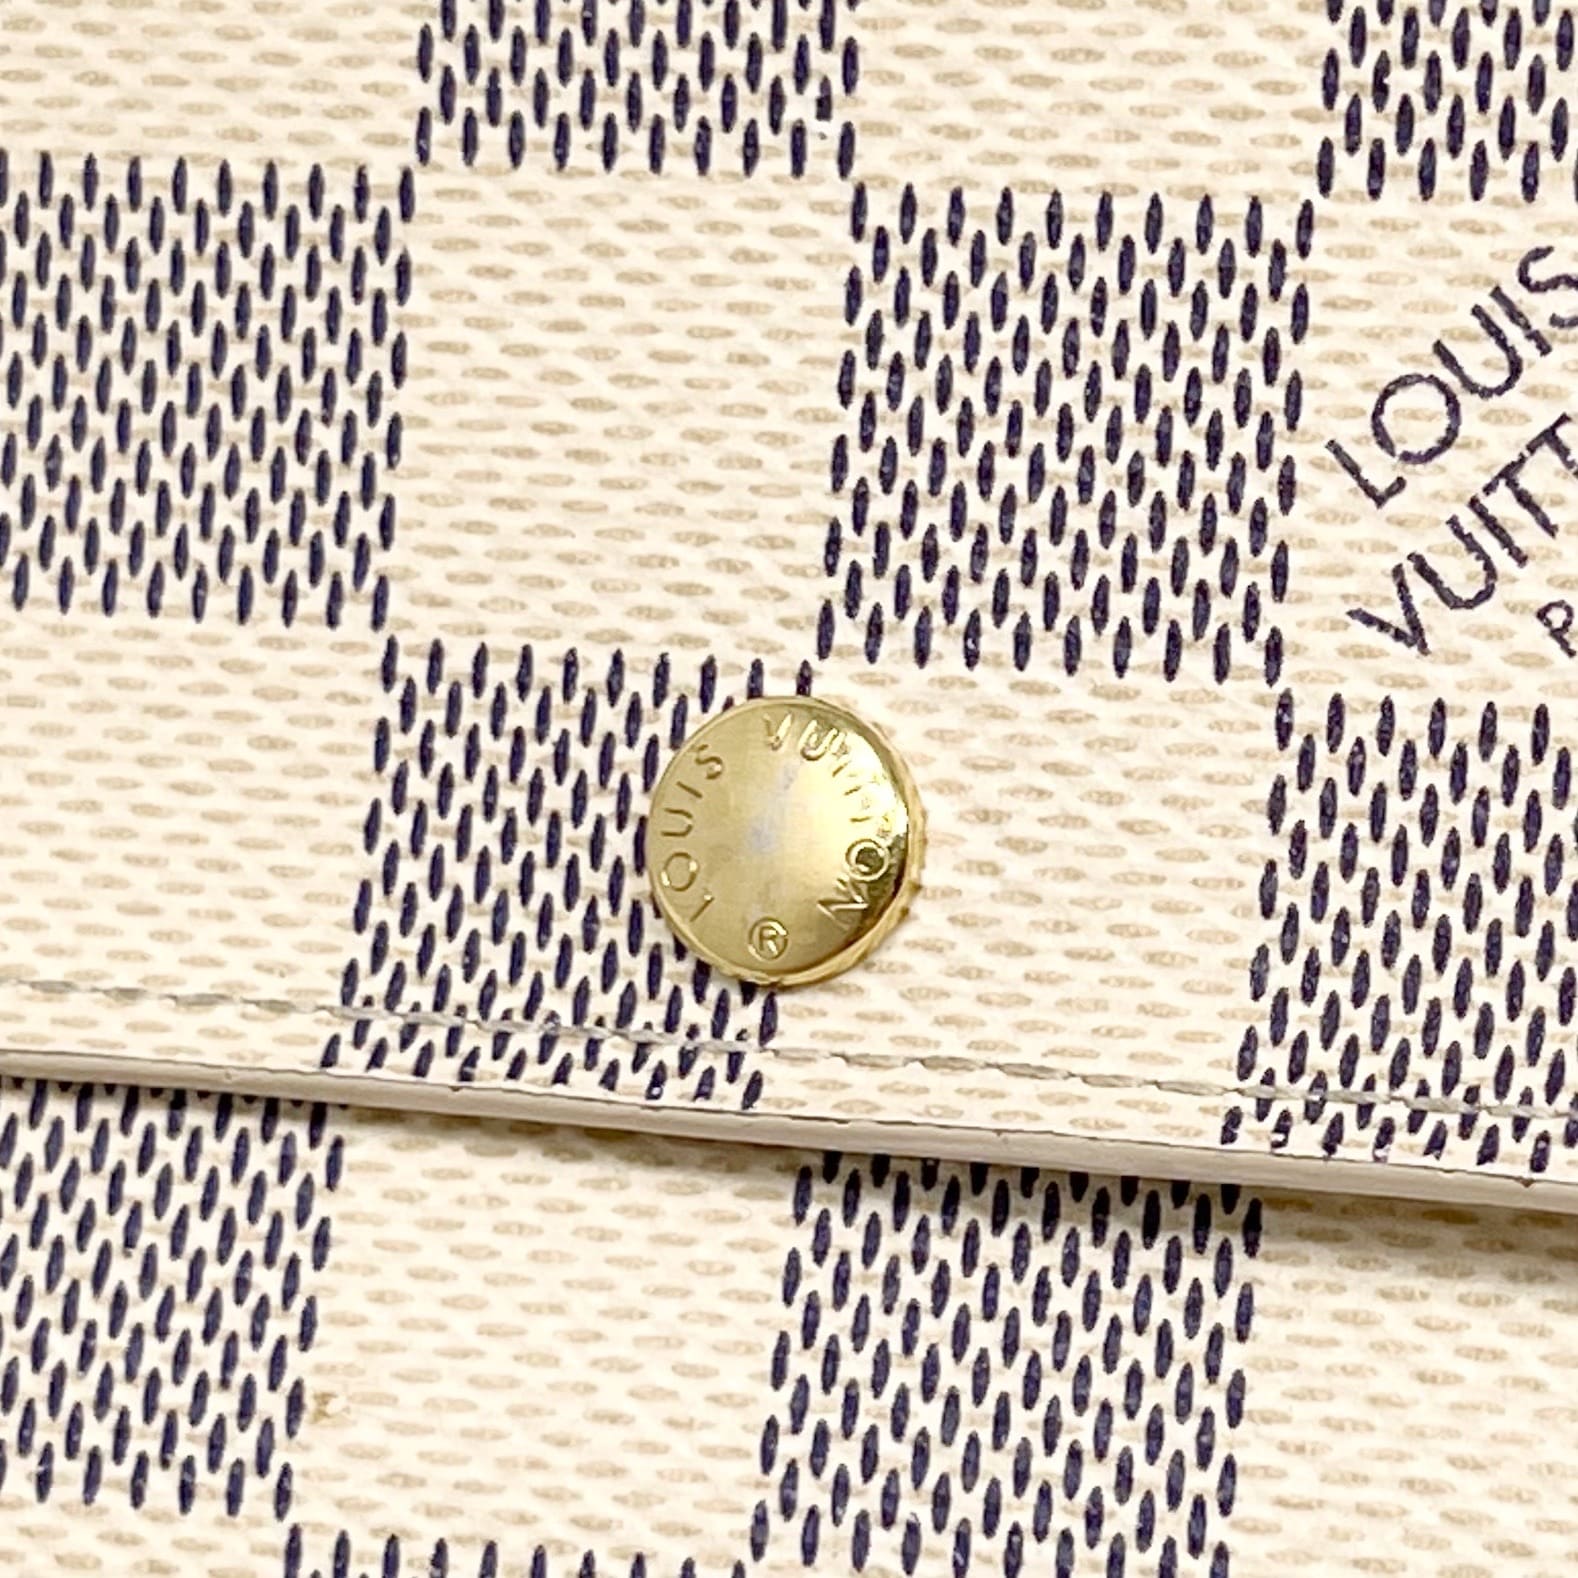 Louis Vuitton Damier Azur Compact Wallet